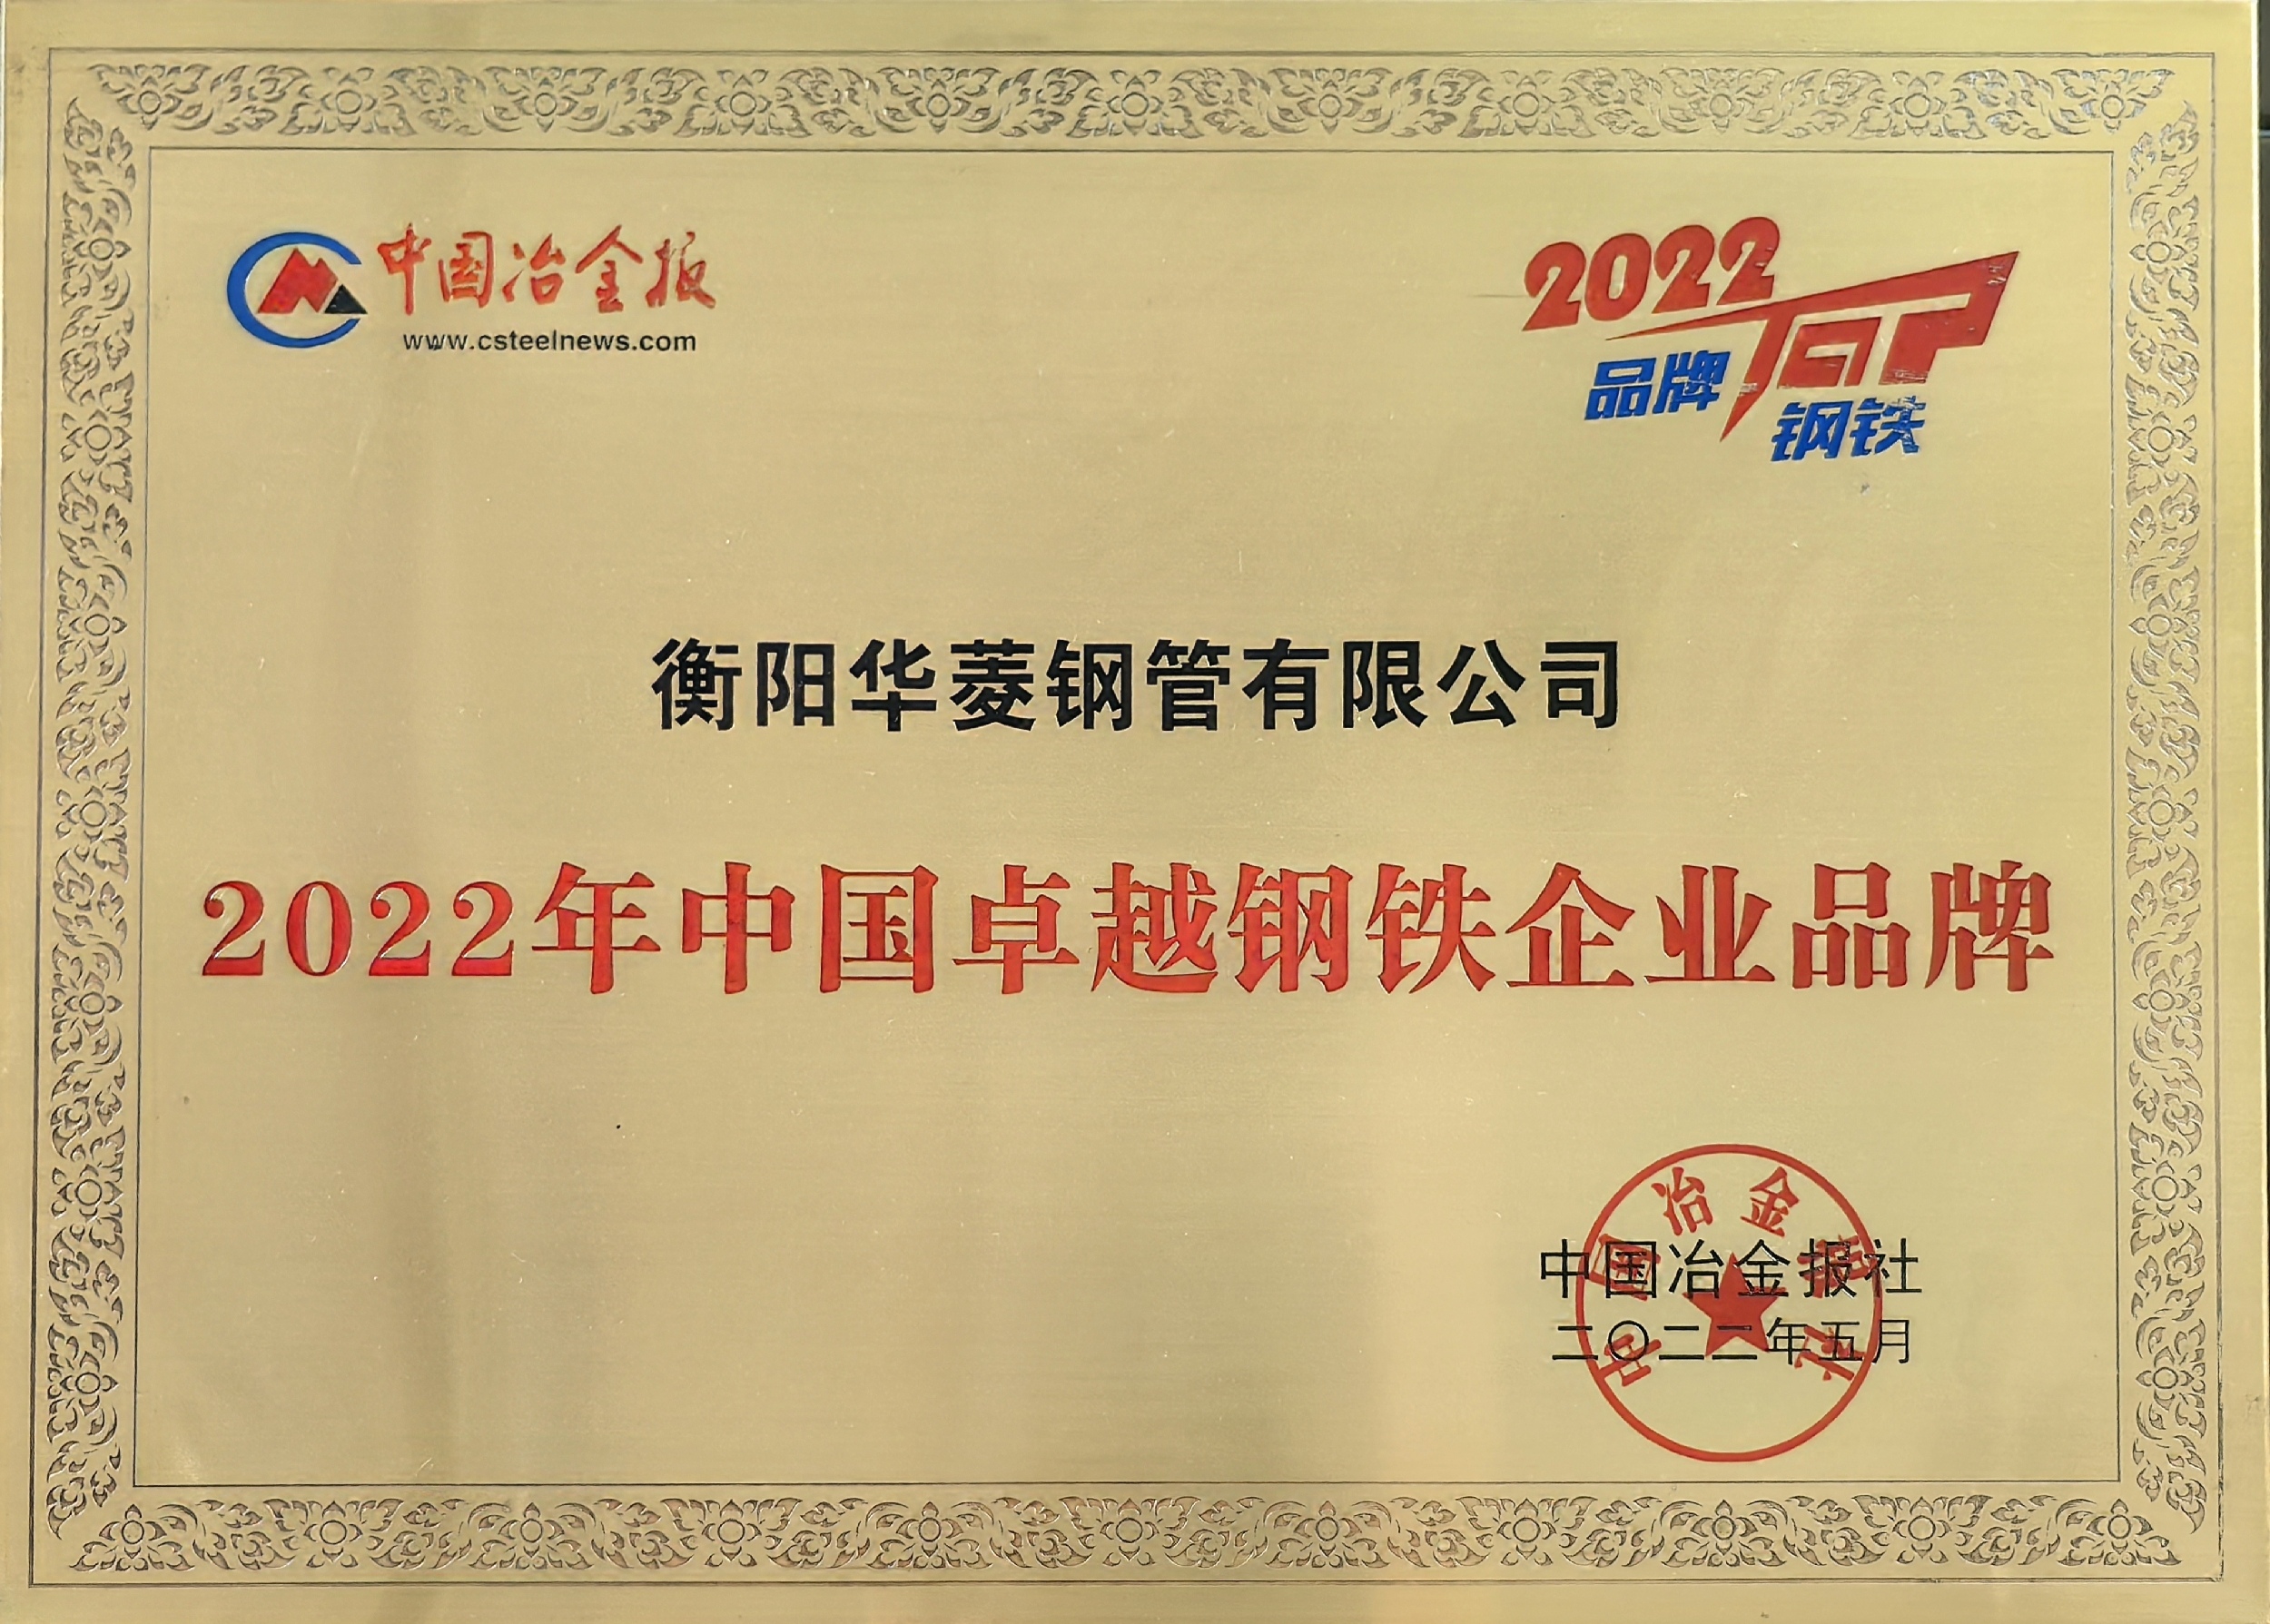 2022年中国卓越钢铁企业品牌